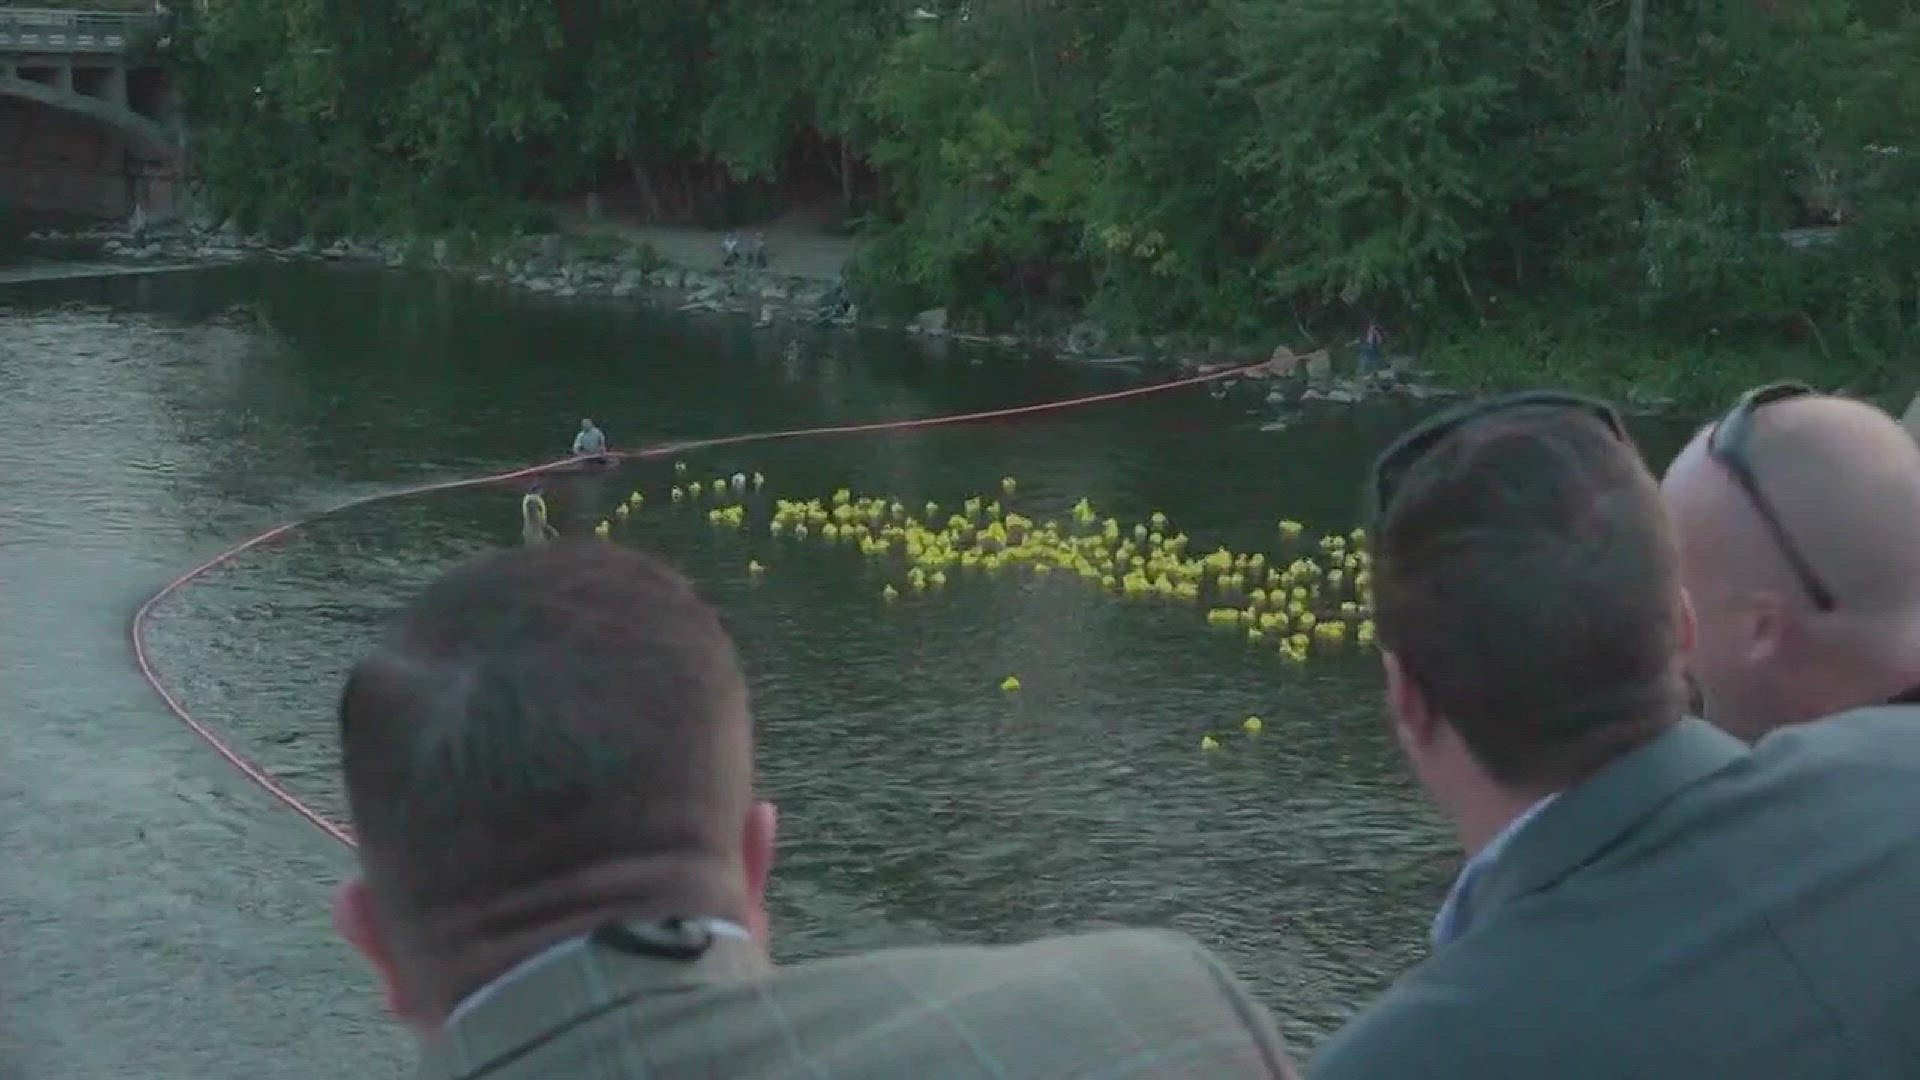 300 rubber ducks in the Grand River